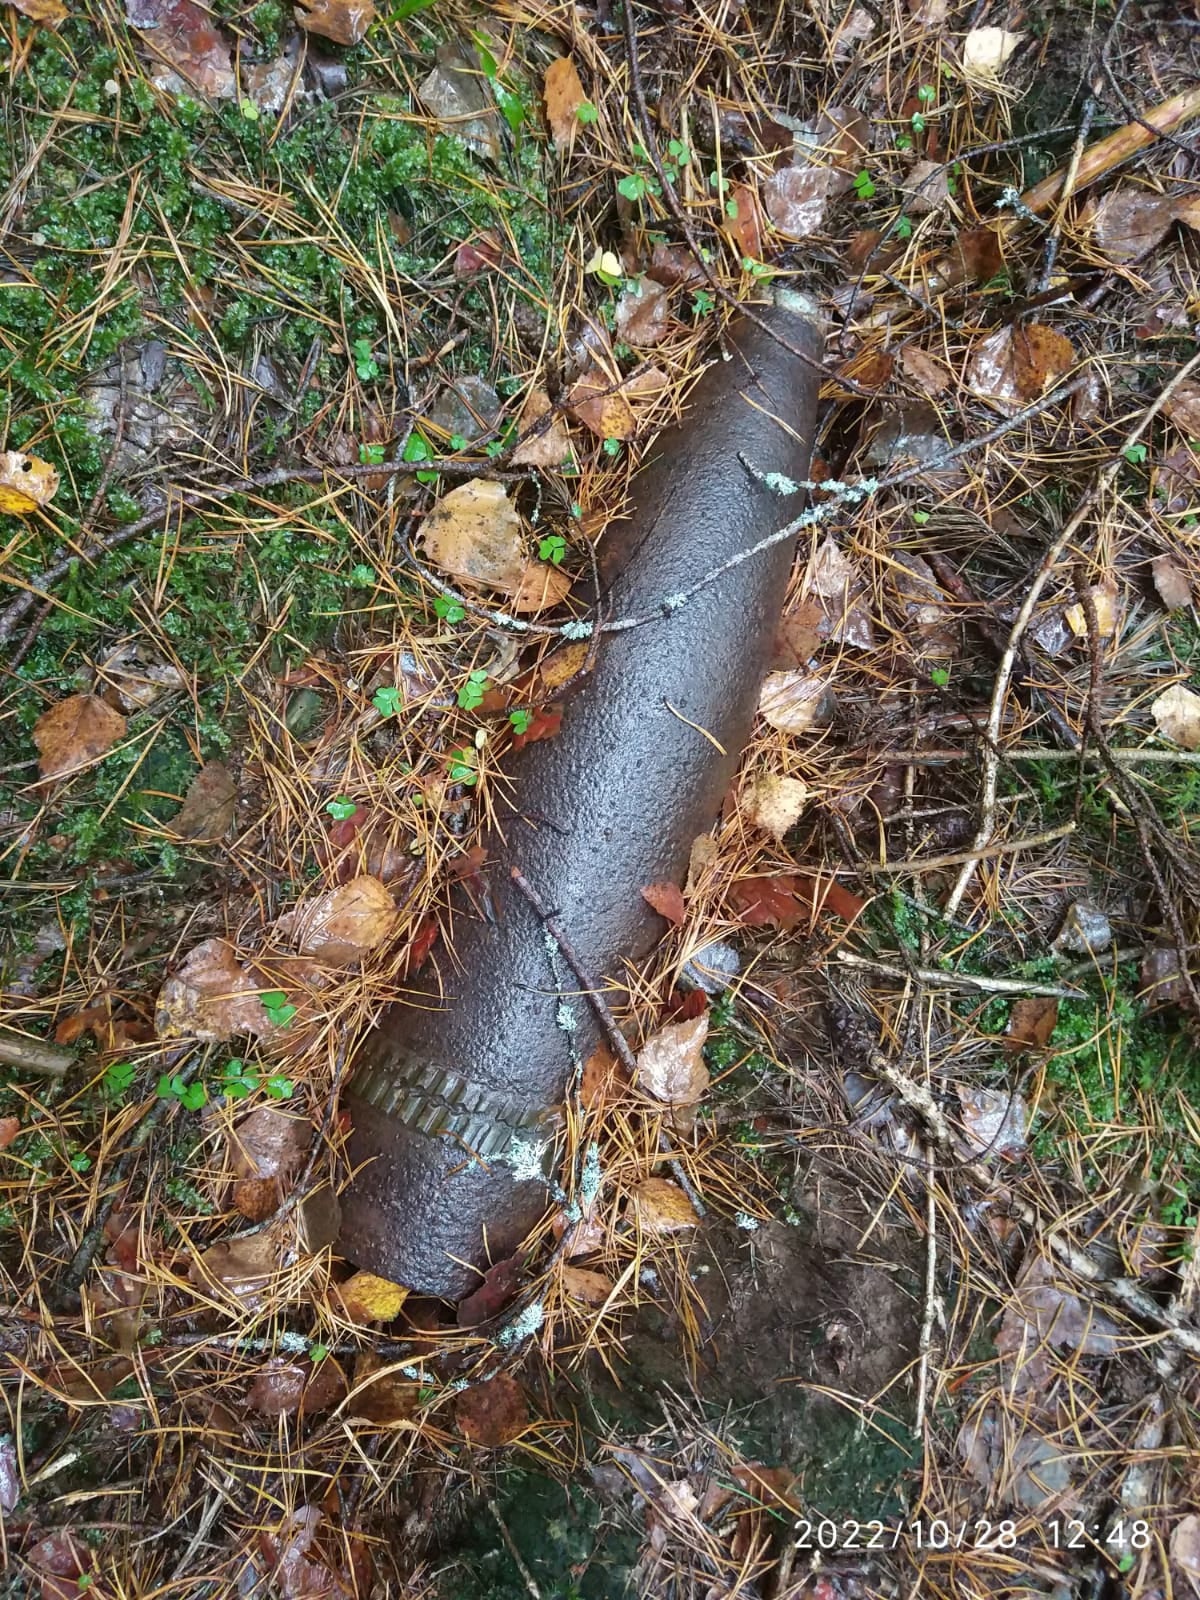 На территории Смоленской области был обнаружен очередной снаряд времён ВОВ